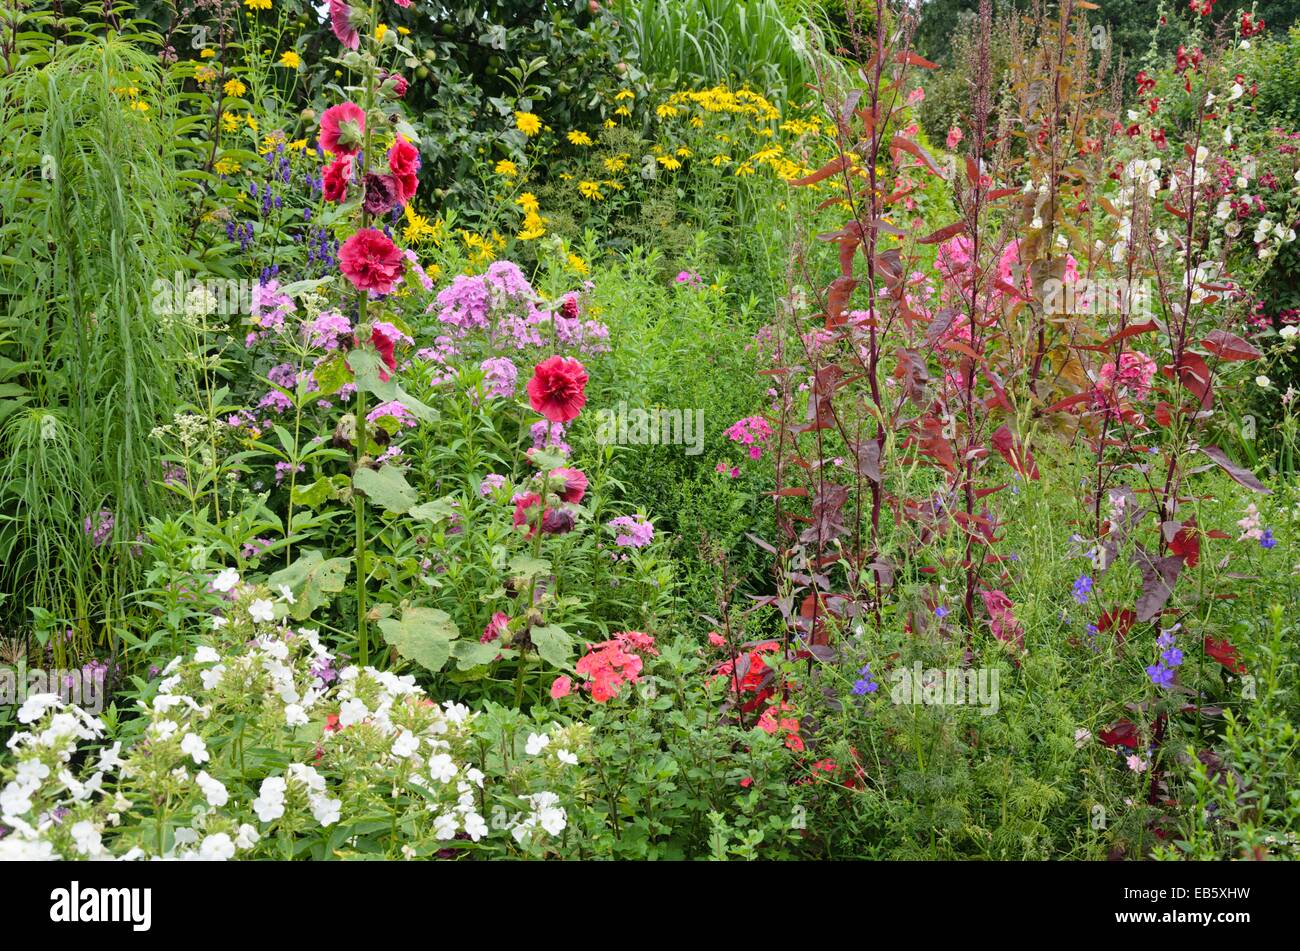 Common hollyhock (Alcea rosea), garden phlox (Phlox paniculata) and red garden orache (Atriplex hortensis var. rubra) Stock Photo